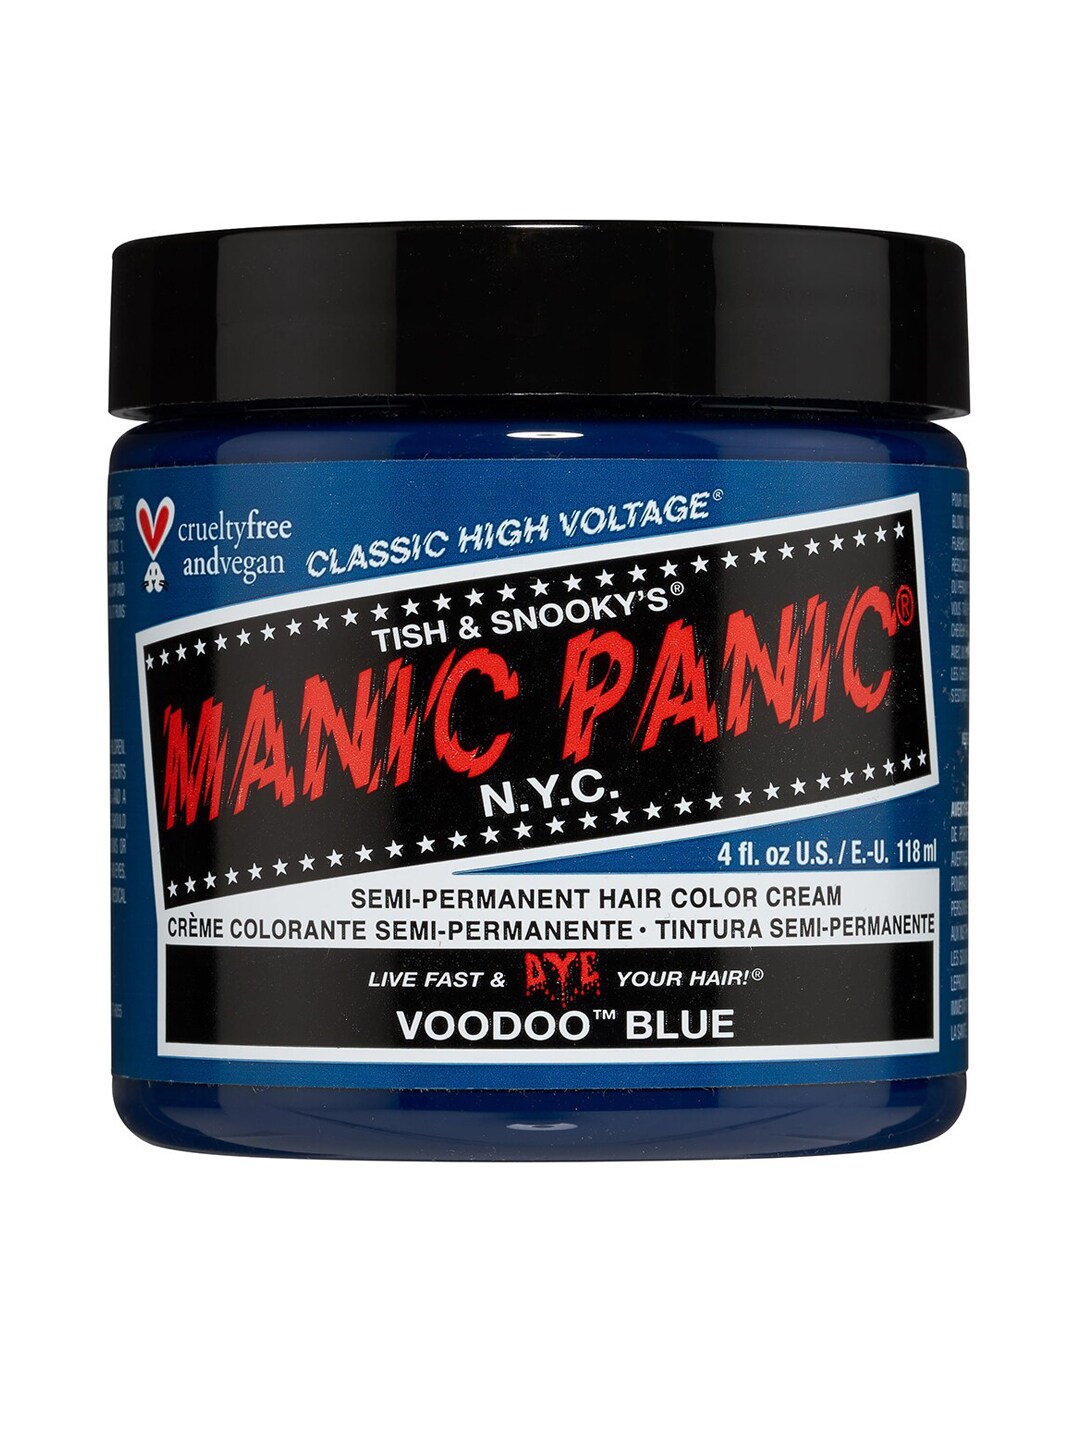 MANIC PANIC Classic High Voltage Semi-Permanent Hair Colour Cream - Voodoo Blue Price in India